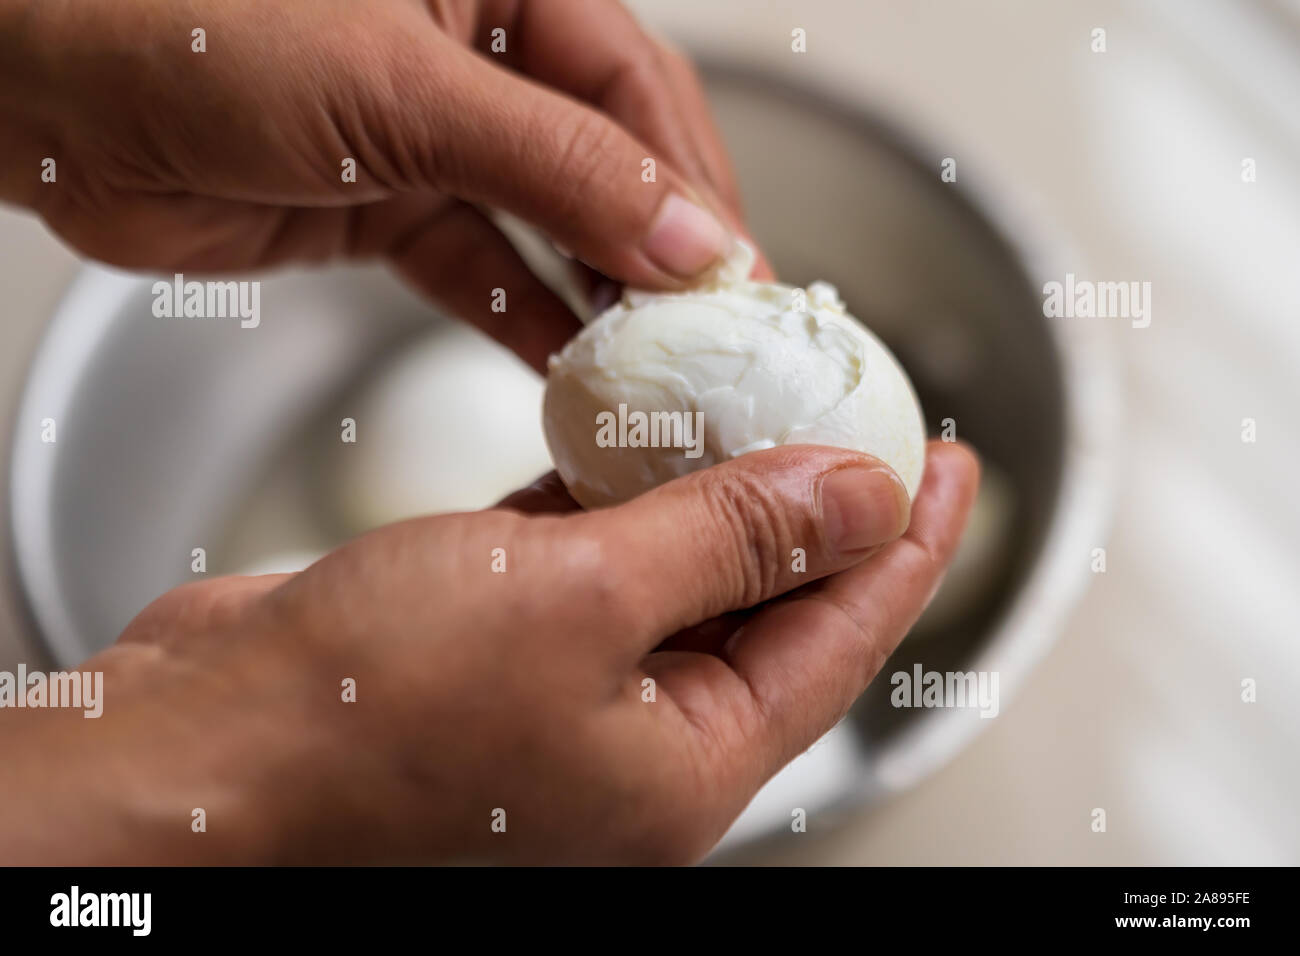 Indische Hausfrau ist unvollkommen Schälen gekochte Eier in eine Schüssel  geben. Gekochtes Huhn eier Schale Vorbereitung Konzept geschält  Stockfotografie - Alamy